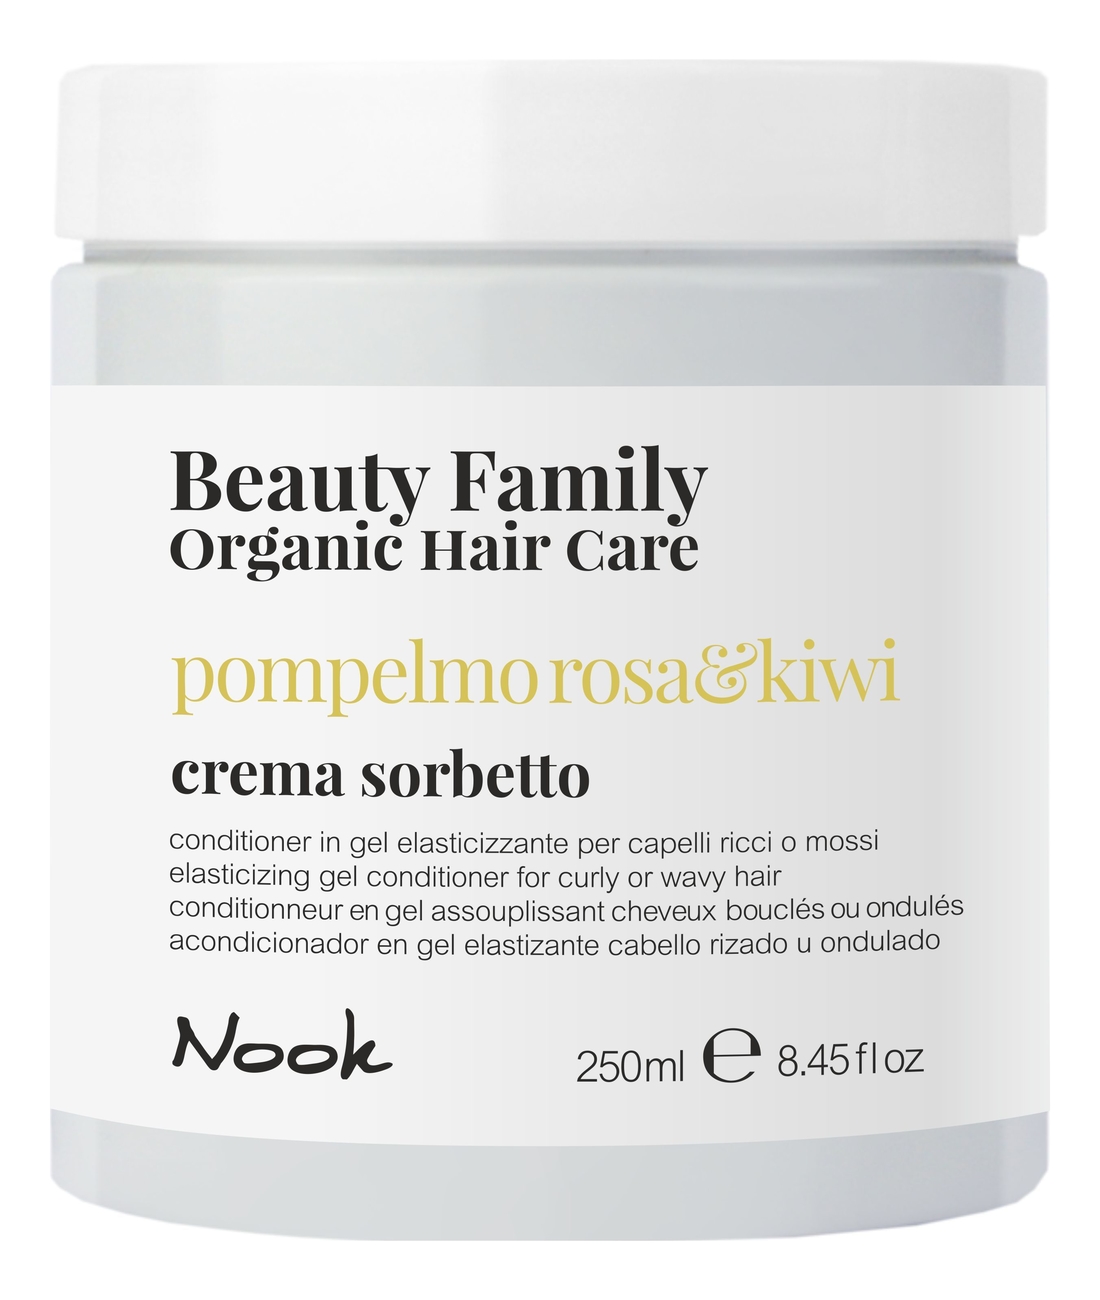 Восстанавливающий гель-кондиционер для кудрявых или волнистых волос Beauty Family Crema Sorbetto Pompelmo Rosa & Kiwi: Гель-кондиционер 250мл